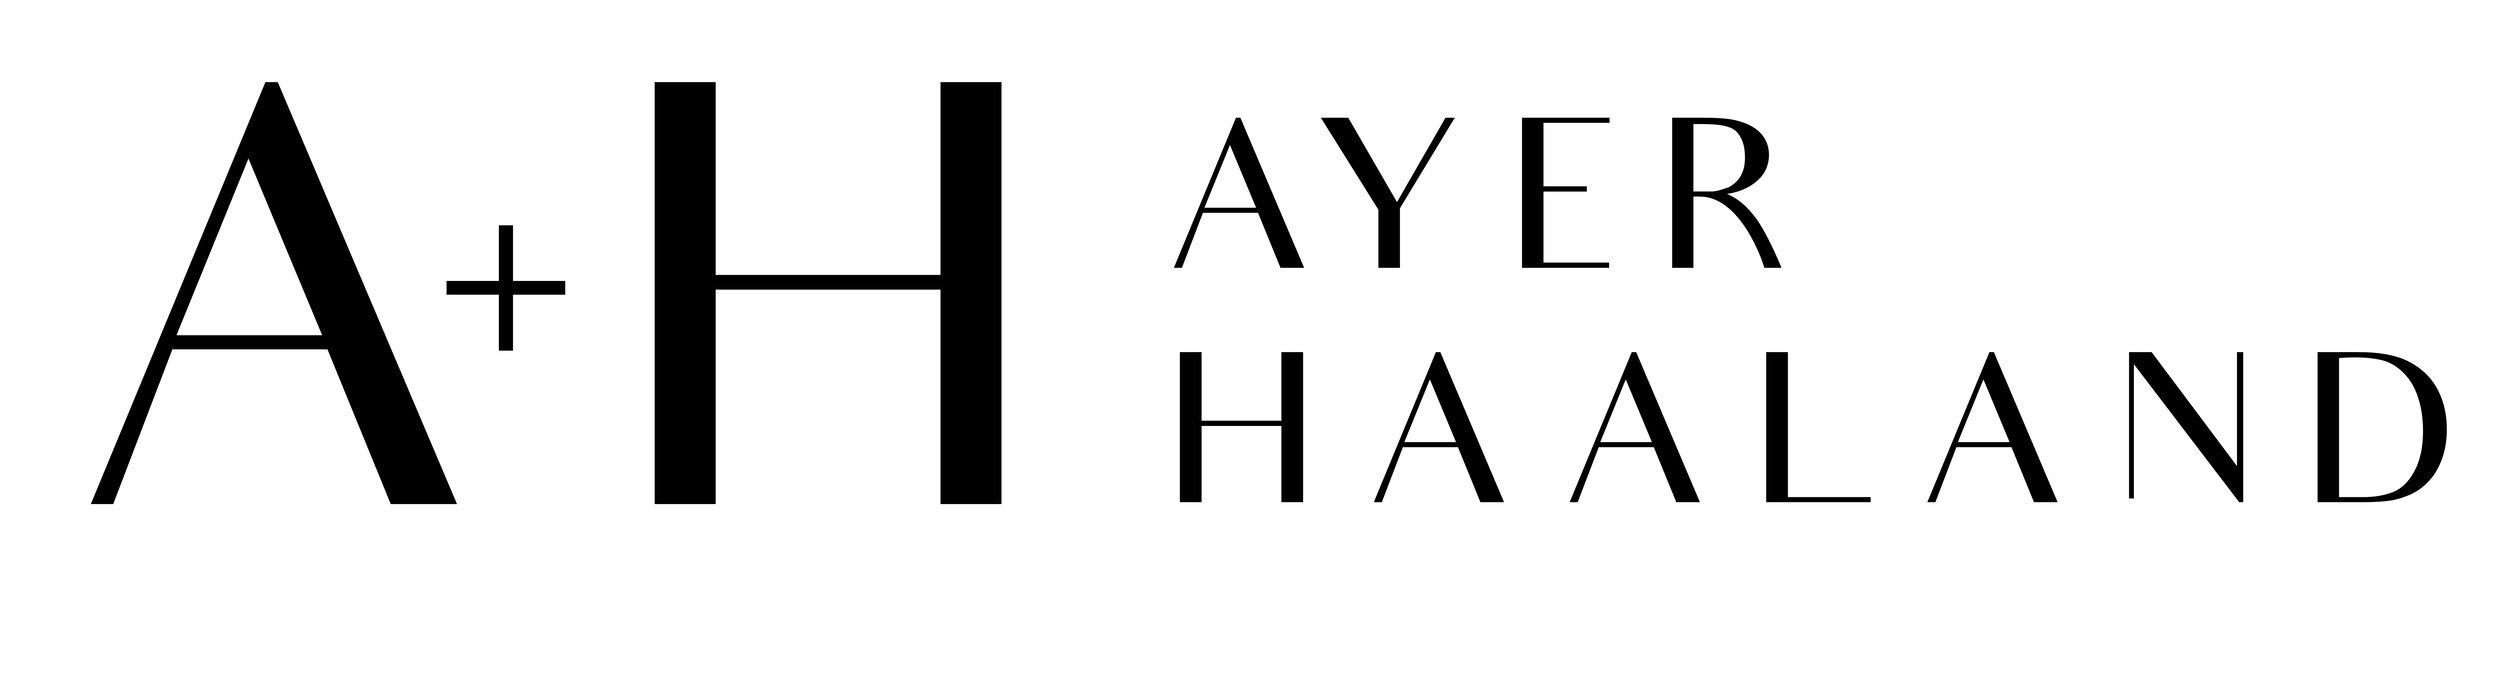 AYER HAALAND